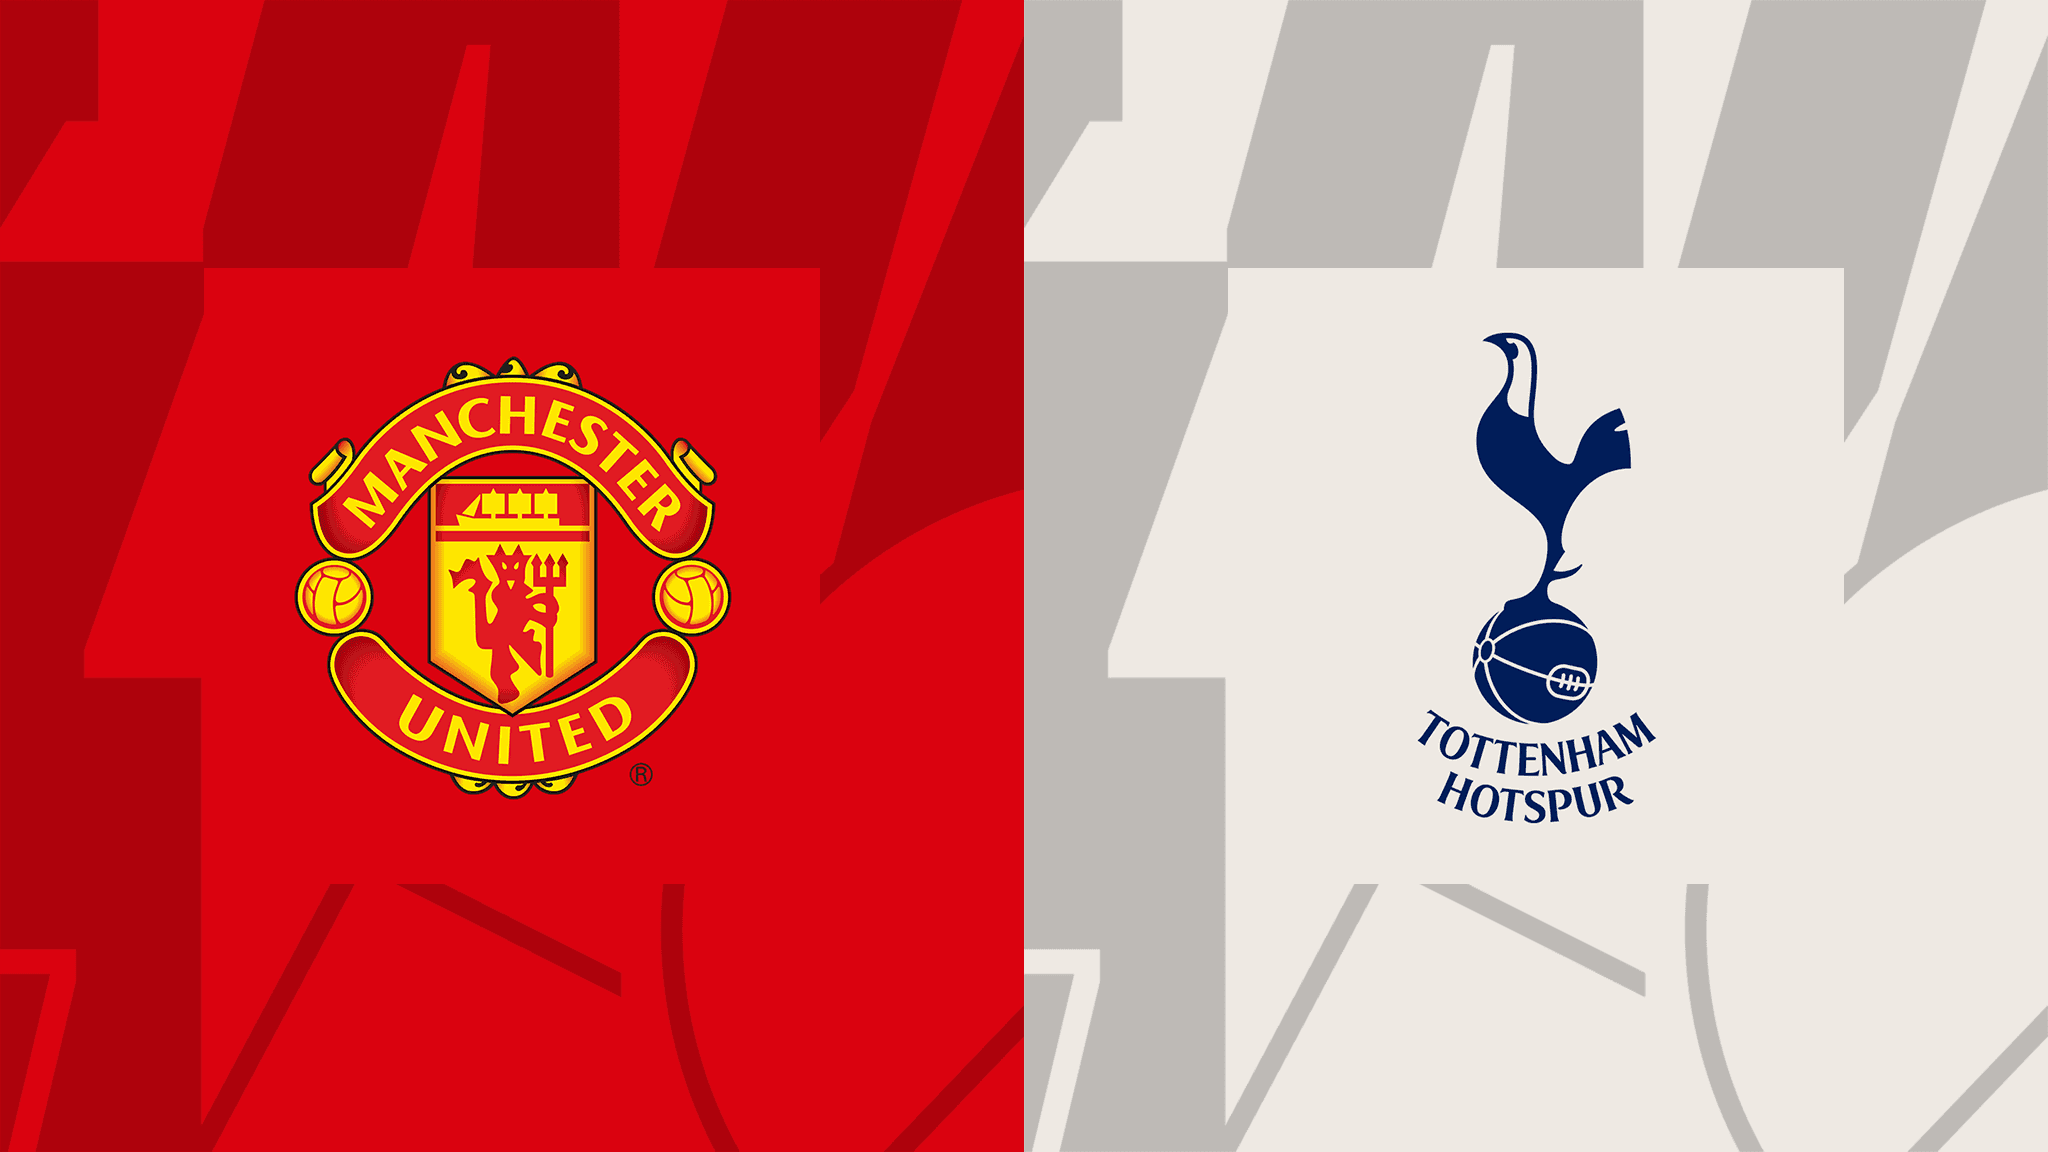 مشاهدة مباراة مانشستر يونايتد و توتنهام هوتسبير بث مباشر 19/10/2022 Manchester United vs Tottenham